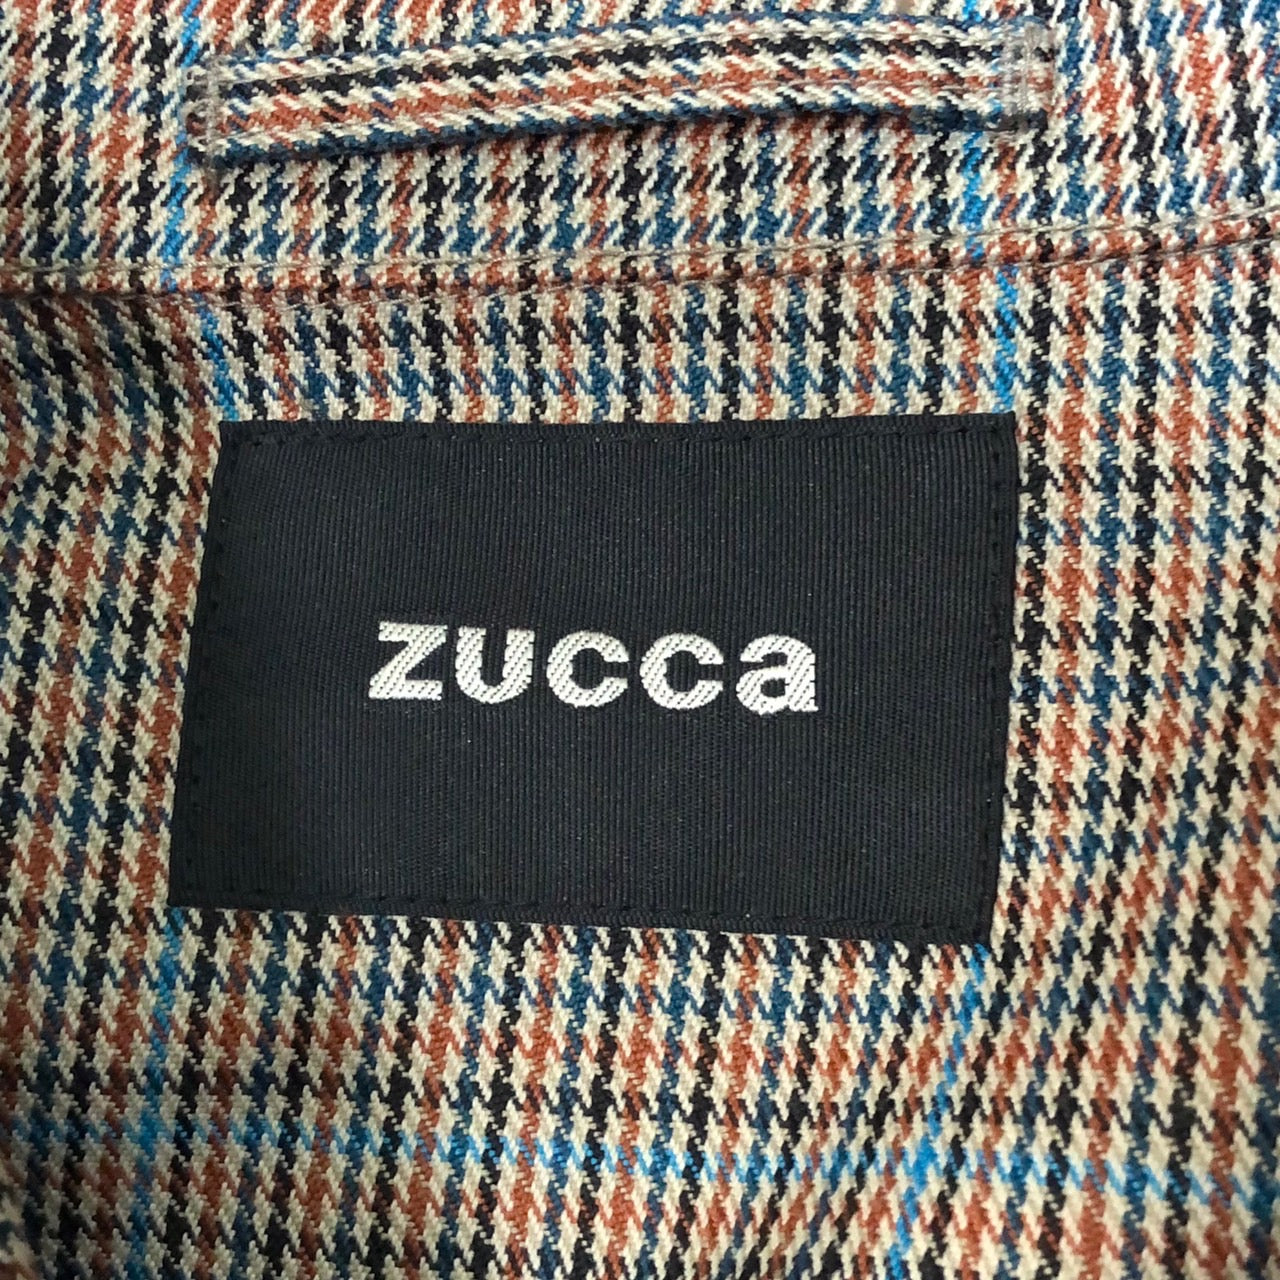 ZUCCa(ズッカ) 22AW TWチェック&ドットシャツ×パンツセットアップ TOP